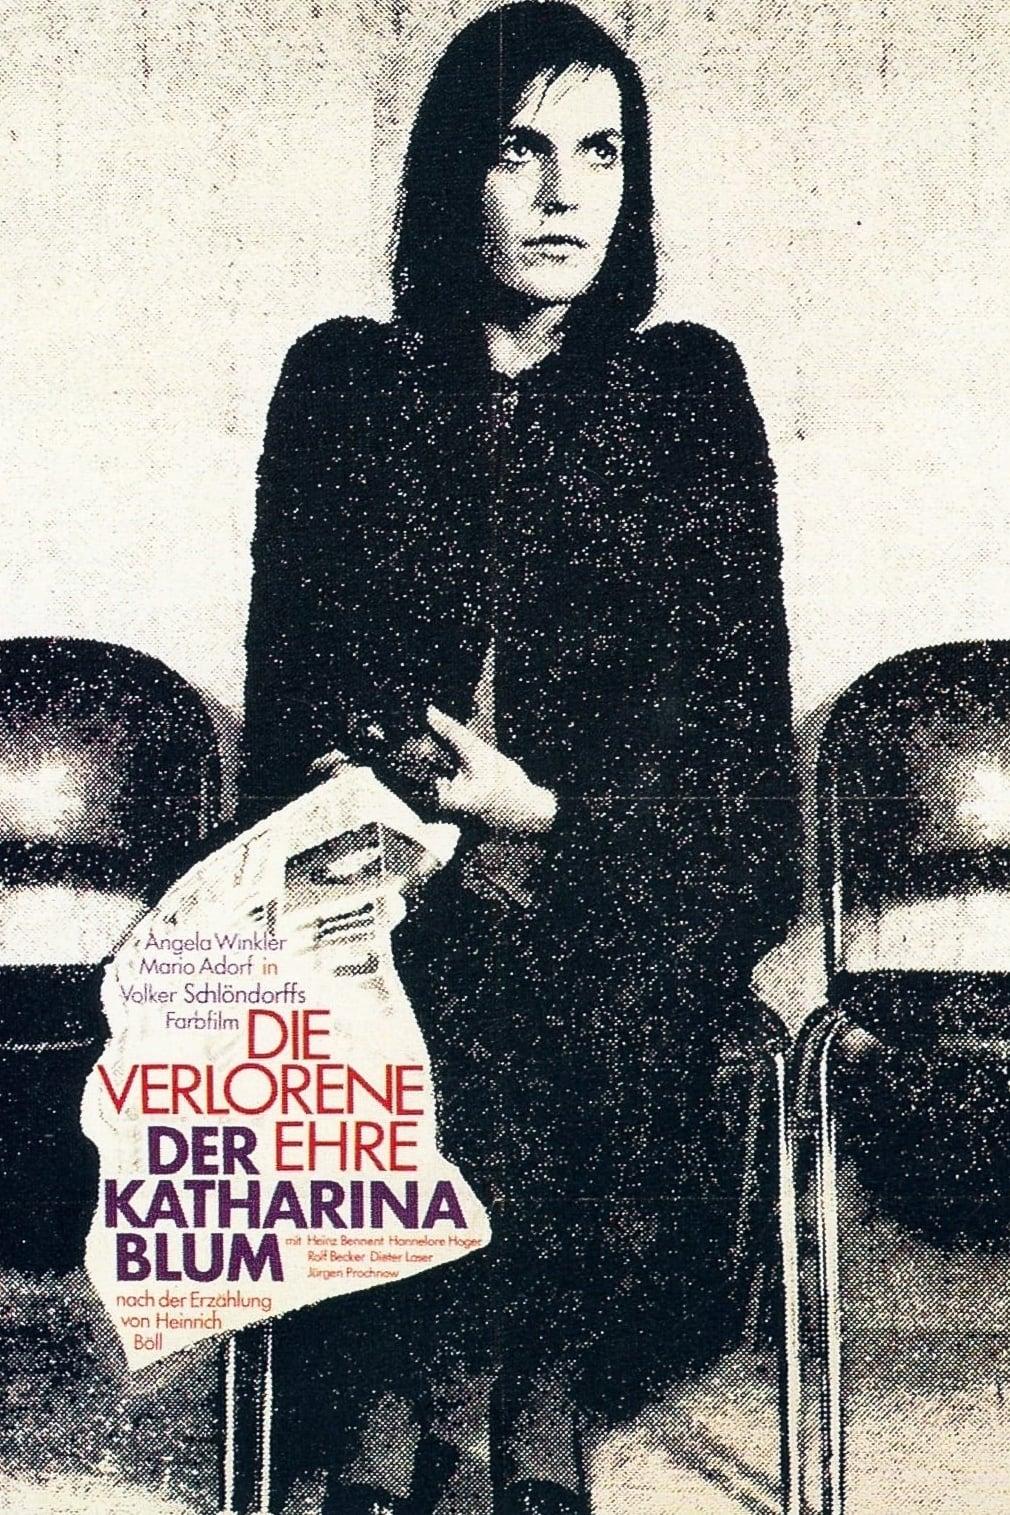 Die verlorene Ehre der Katharina Blum poster